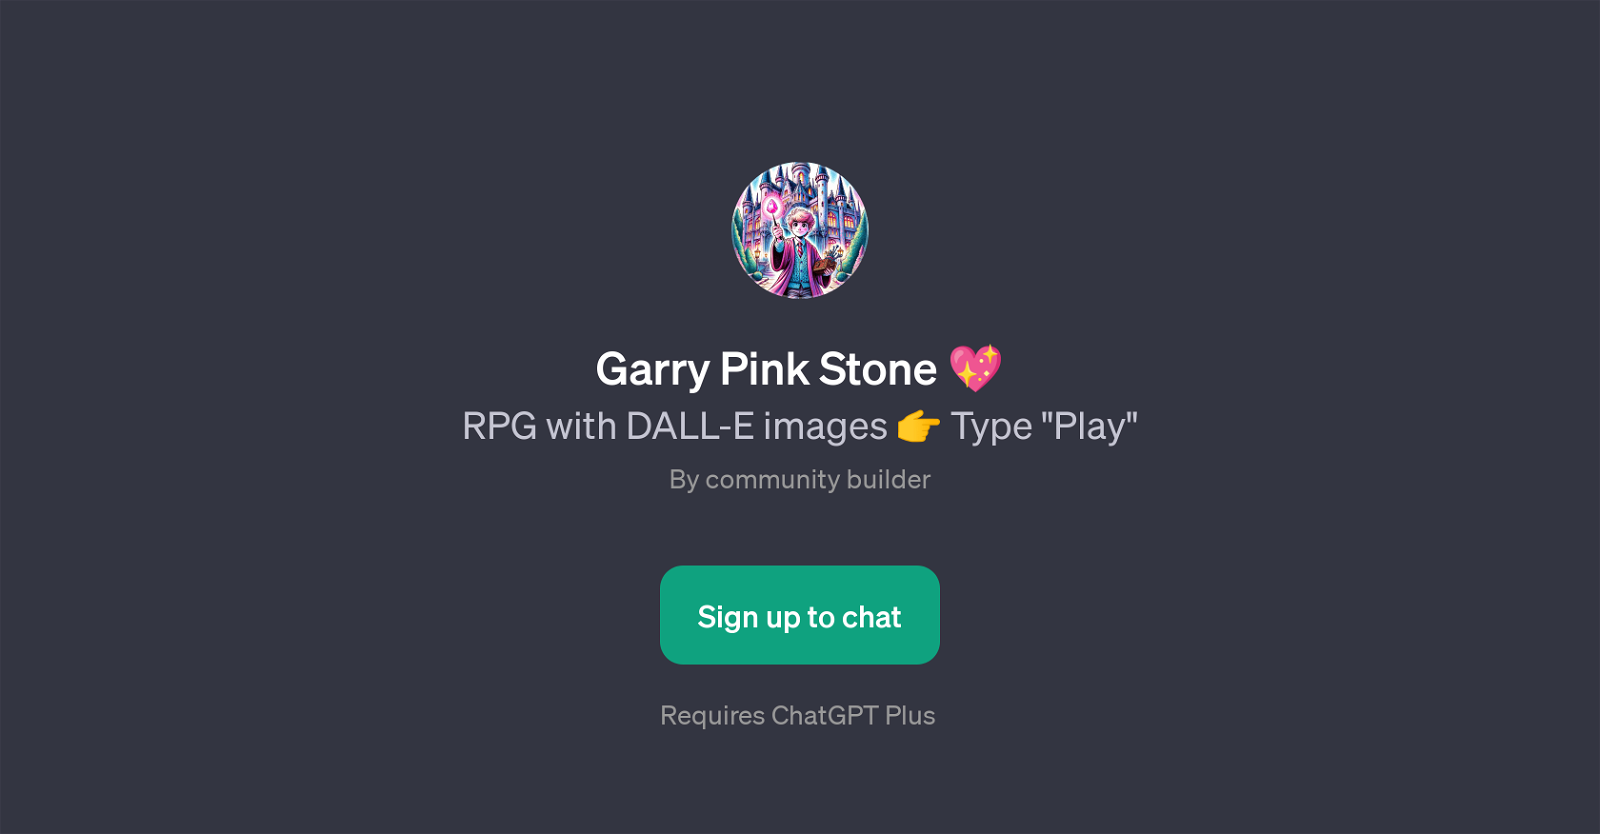 Garry Pink Stone website